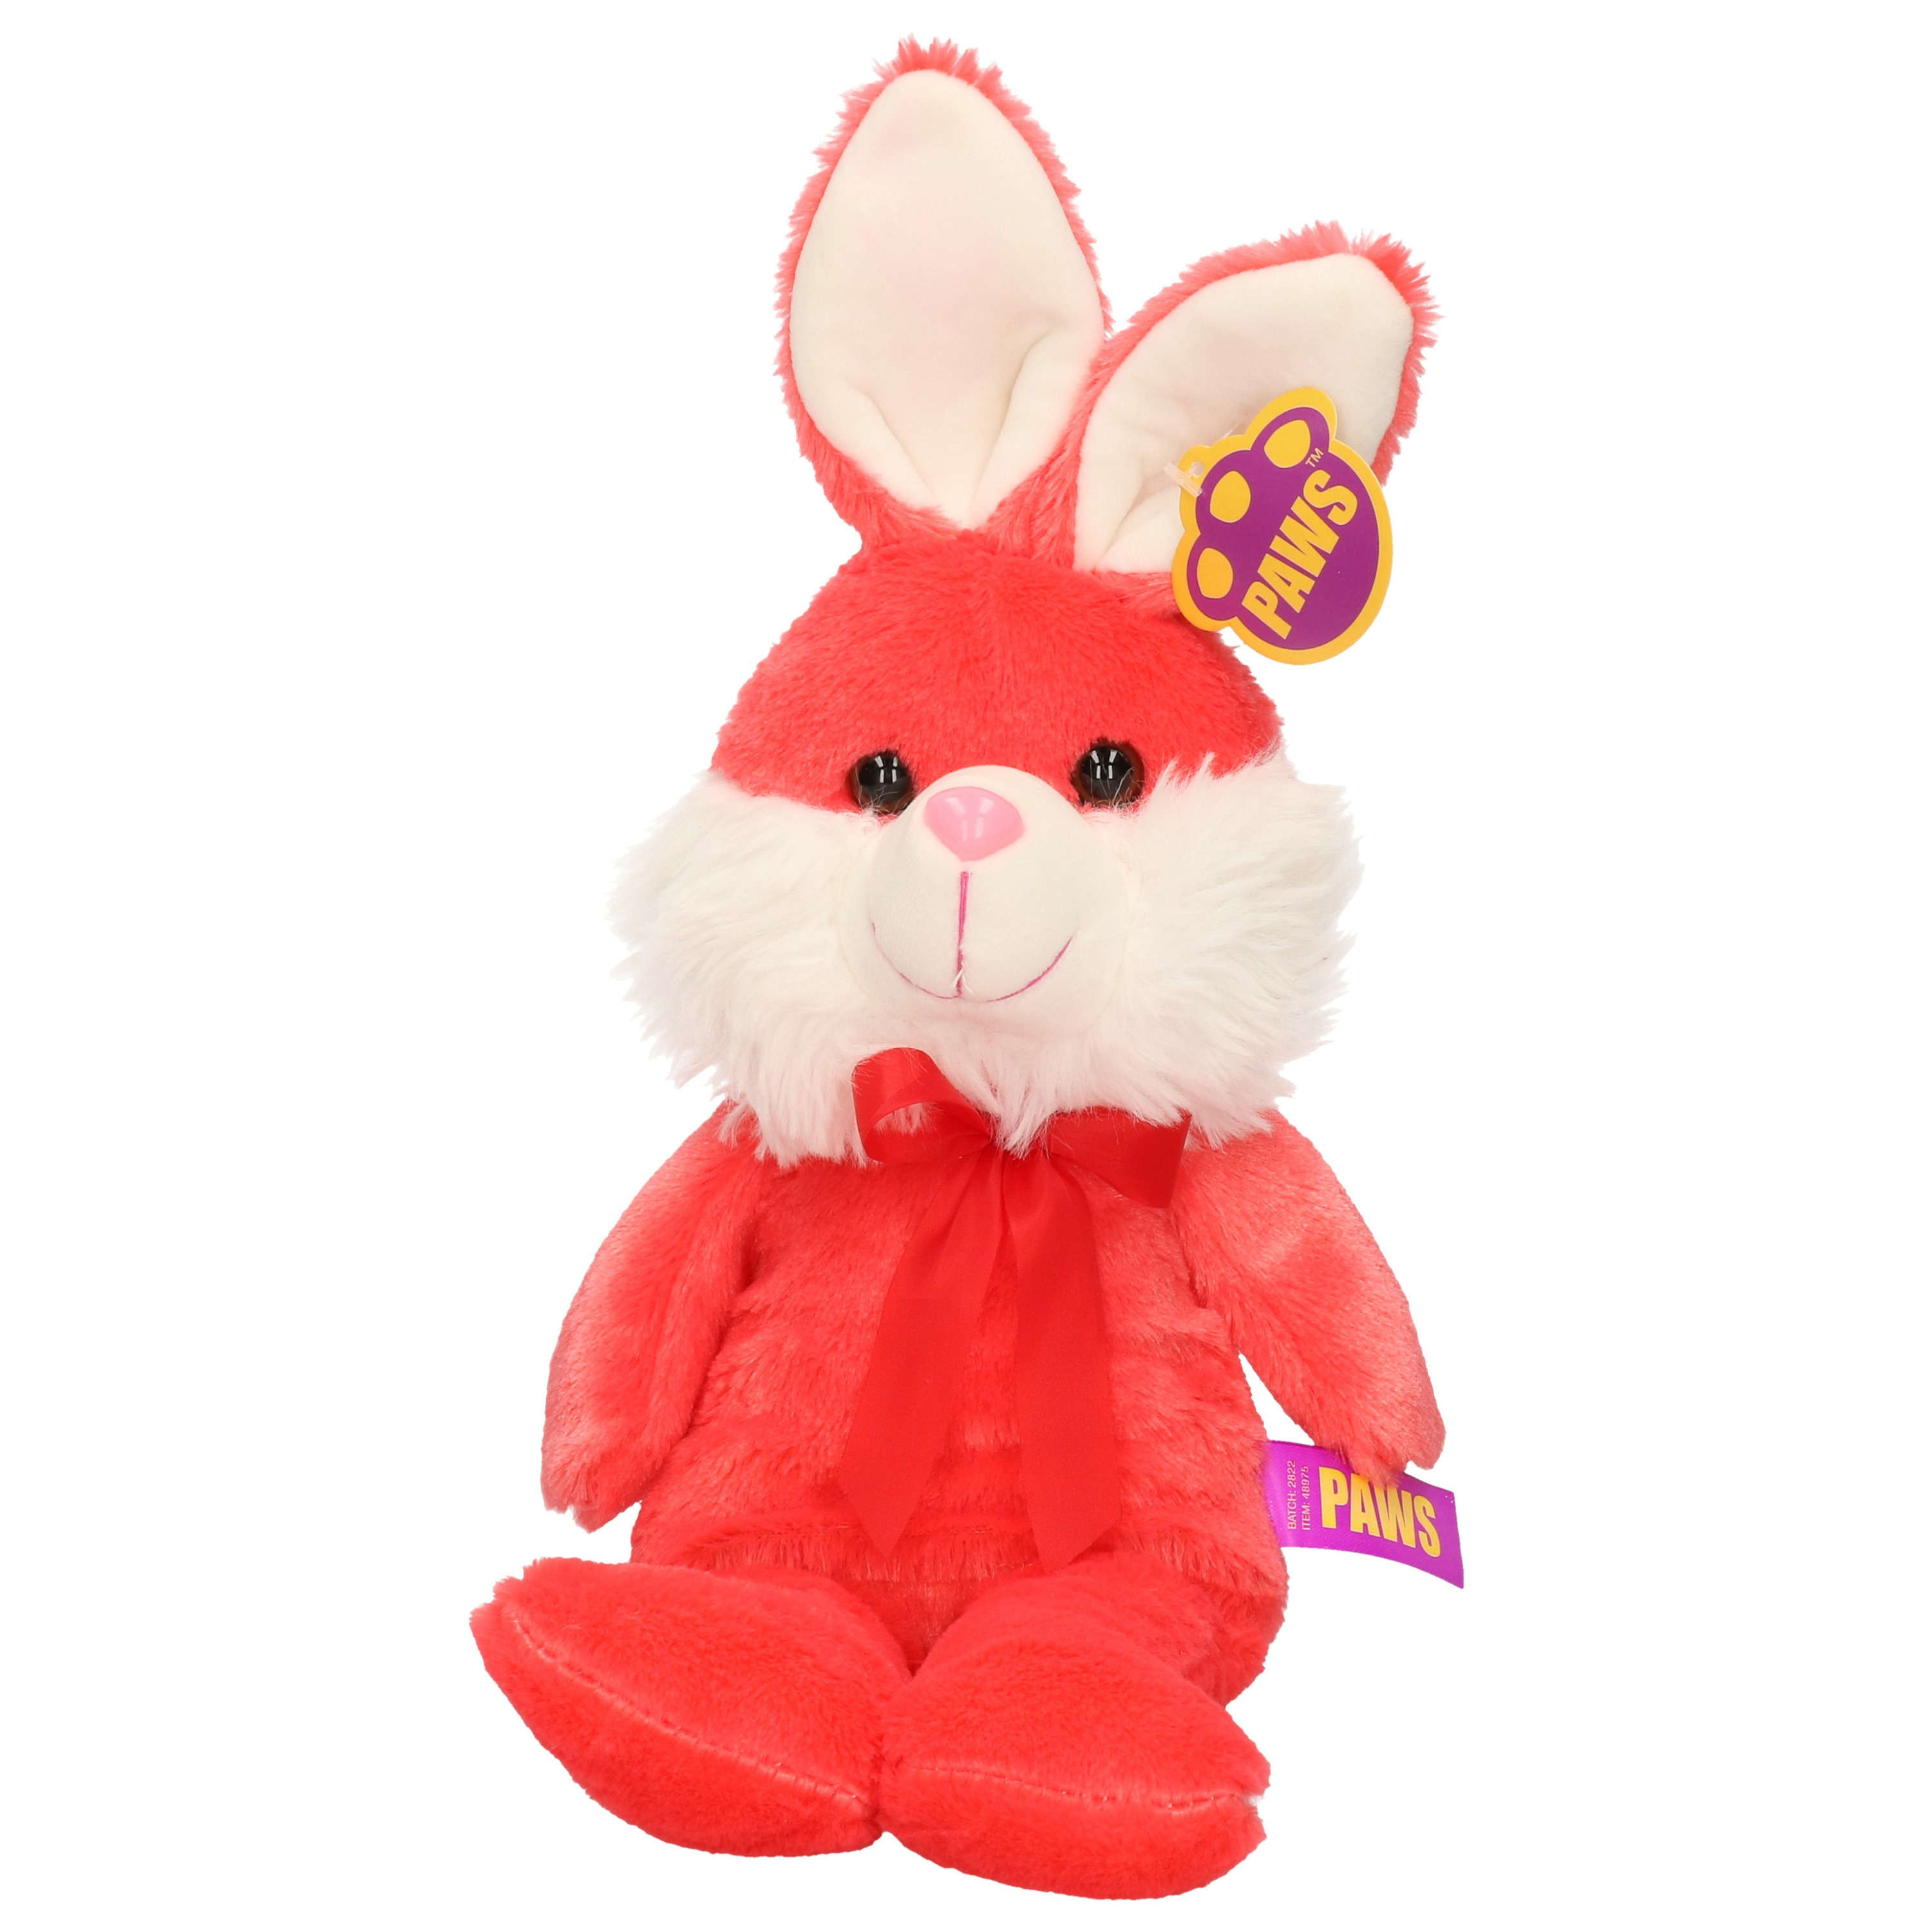 Paashaas/haas/konijn knuffel dier - zachte pluche - rood - cadeau - 32 cm - met strikje